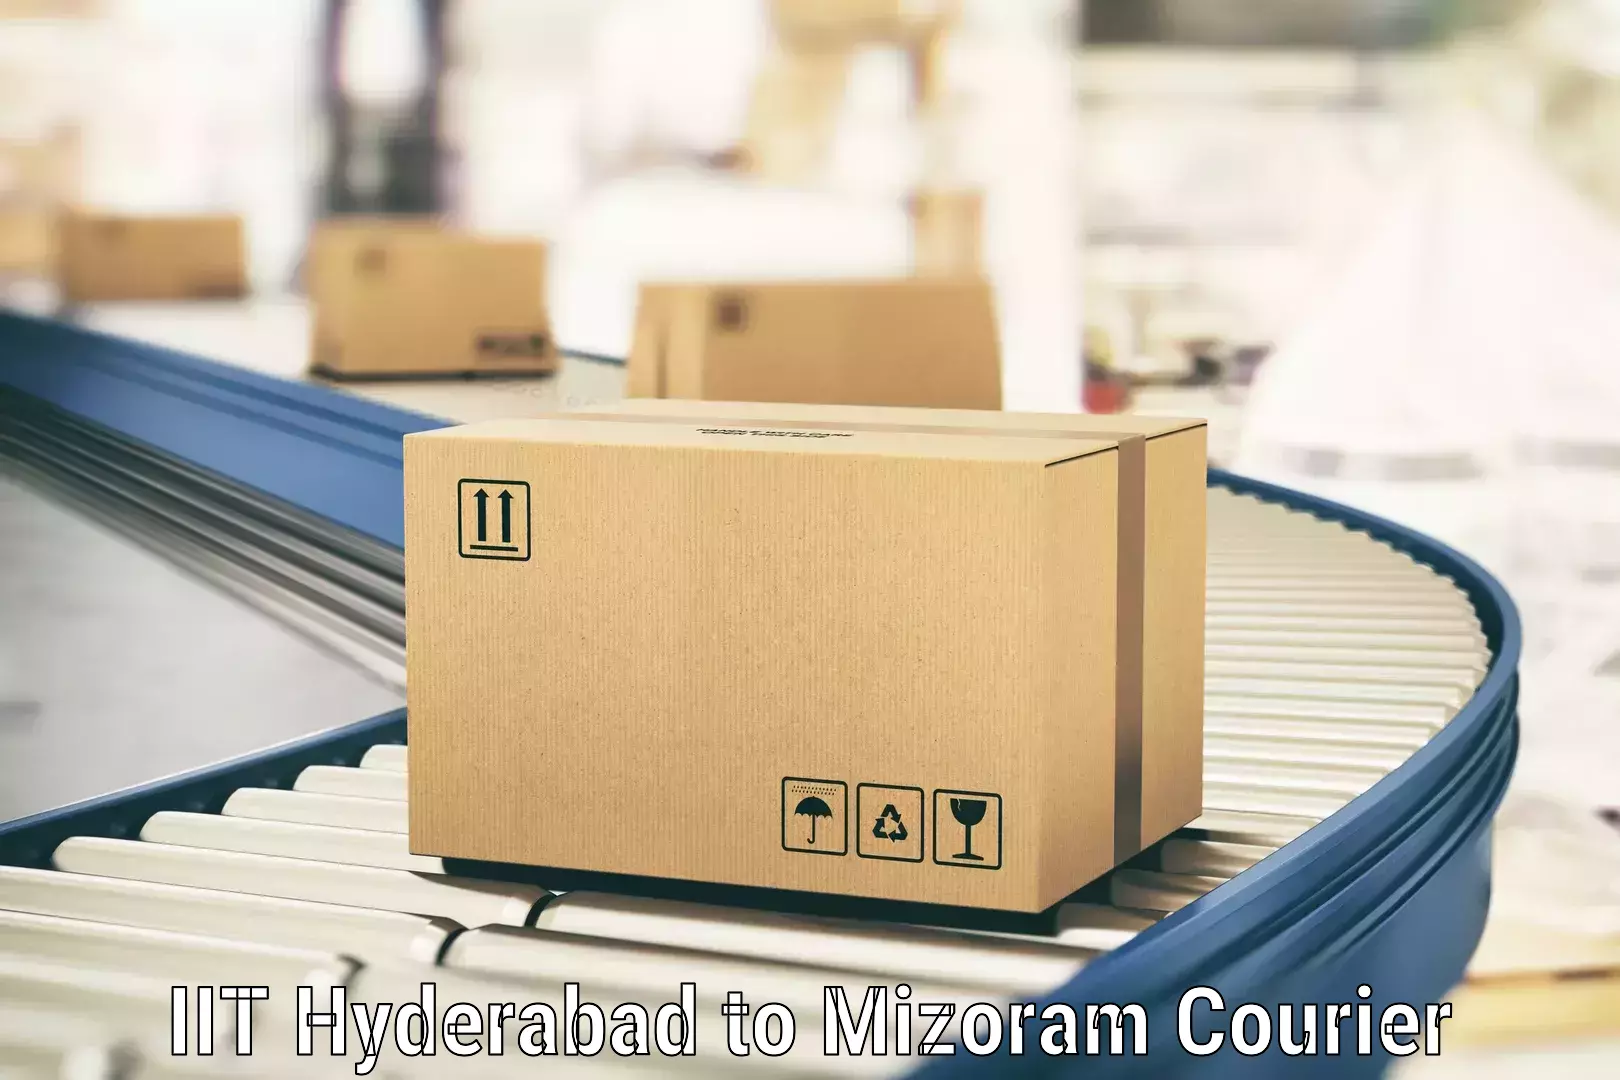 On-demand courier IIT Hyderabad to Mizoram